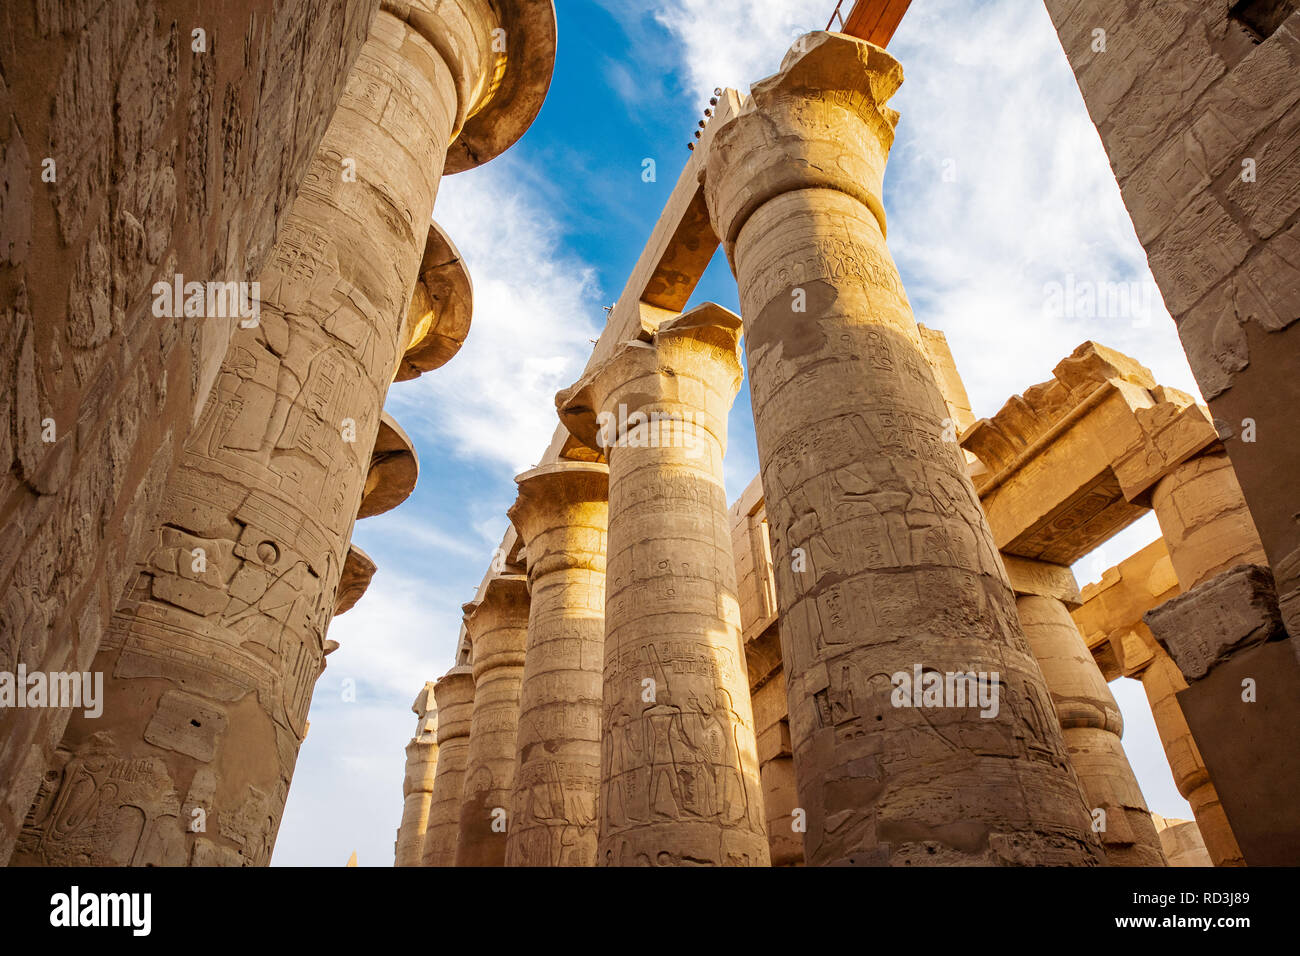 Karnak Tempel in Luxor, Ägypten. Der Karnak Tempel Komplex, allgemein bekannt als Karnak, umfasst einen breiten Mix aus antiken Tempel, Kapellen, Pylonen und Statu Stockfoto